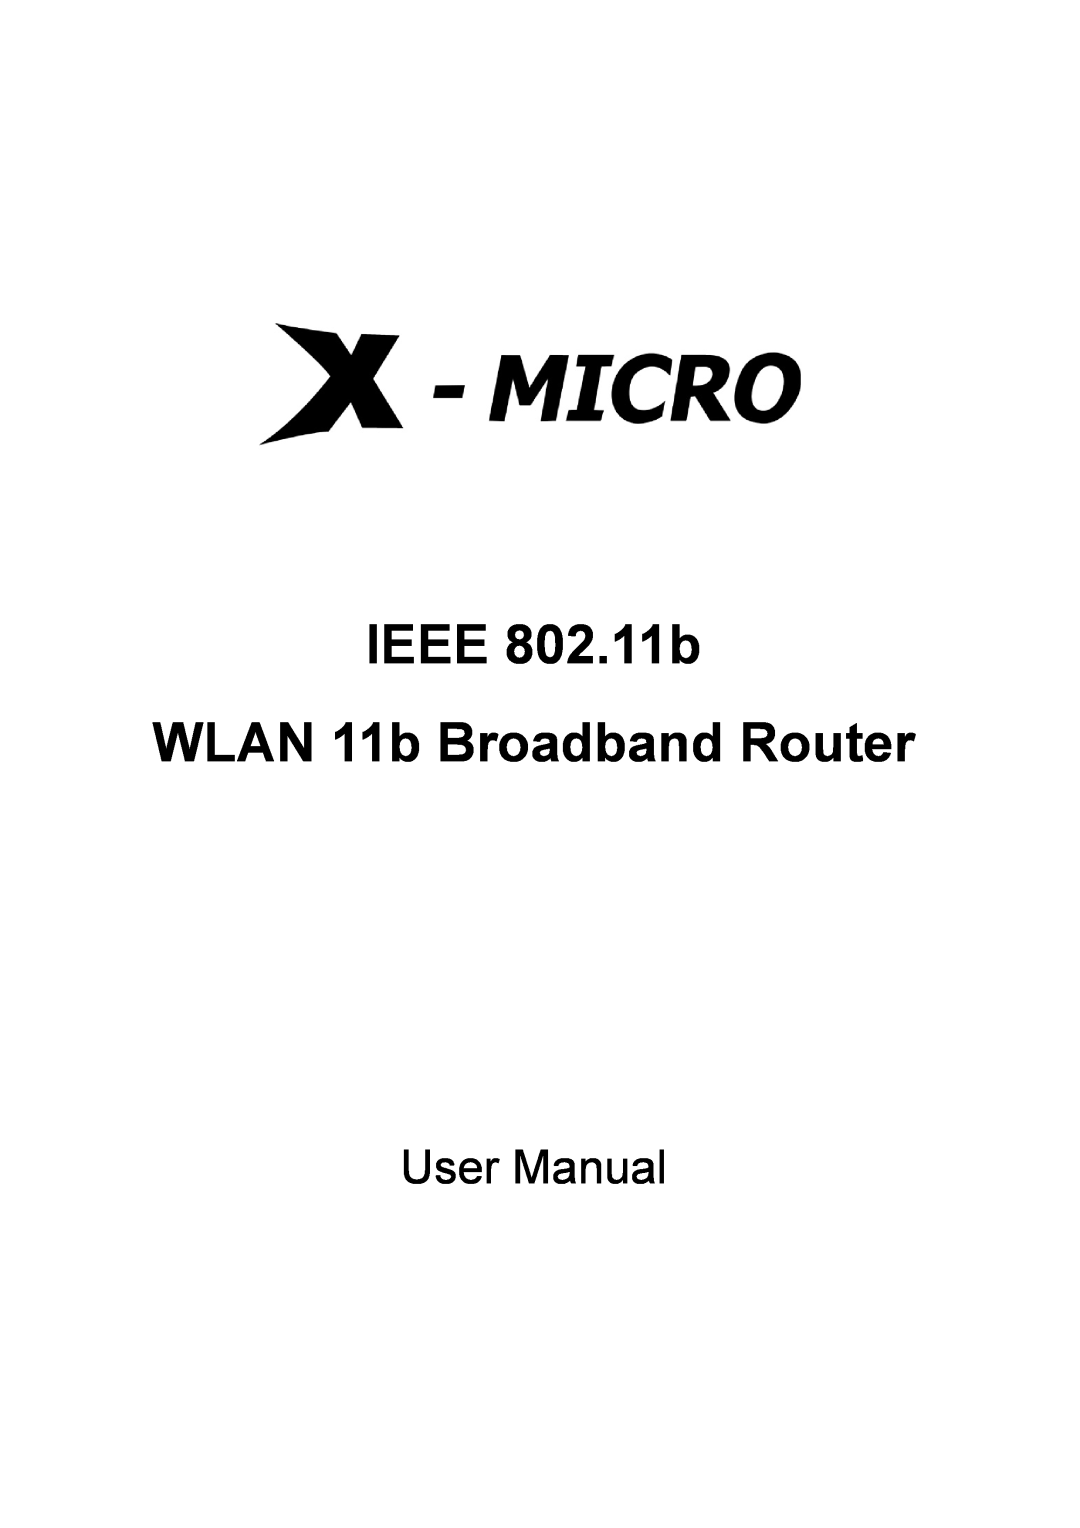 X-Micro Tech user manual IEEE 802.11b WLAN 11b Broadband Router, User Manual 